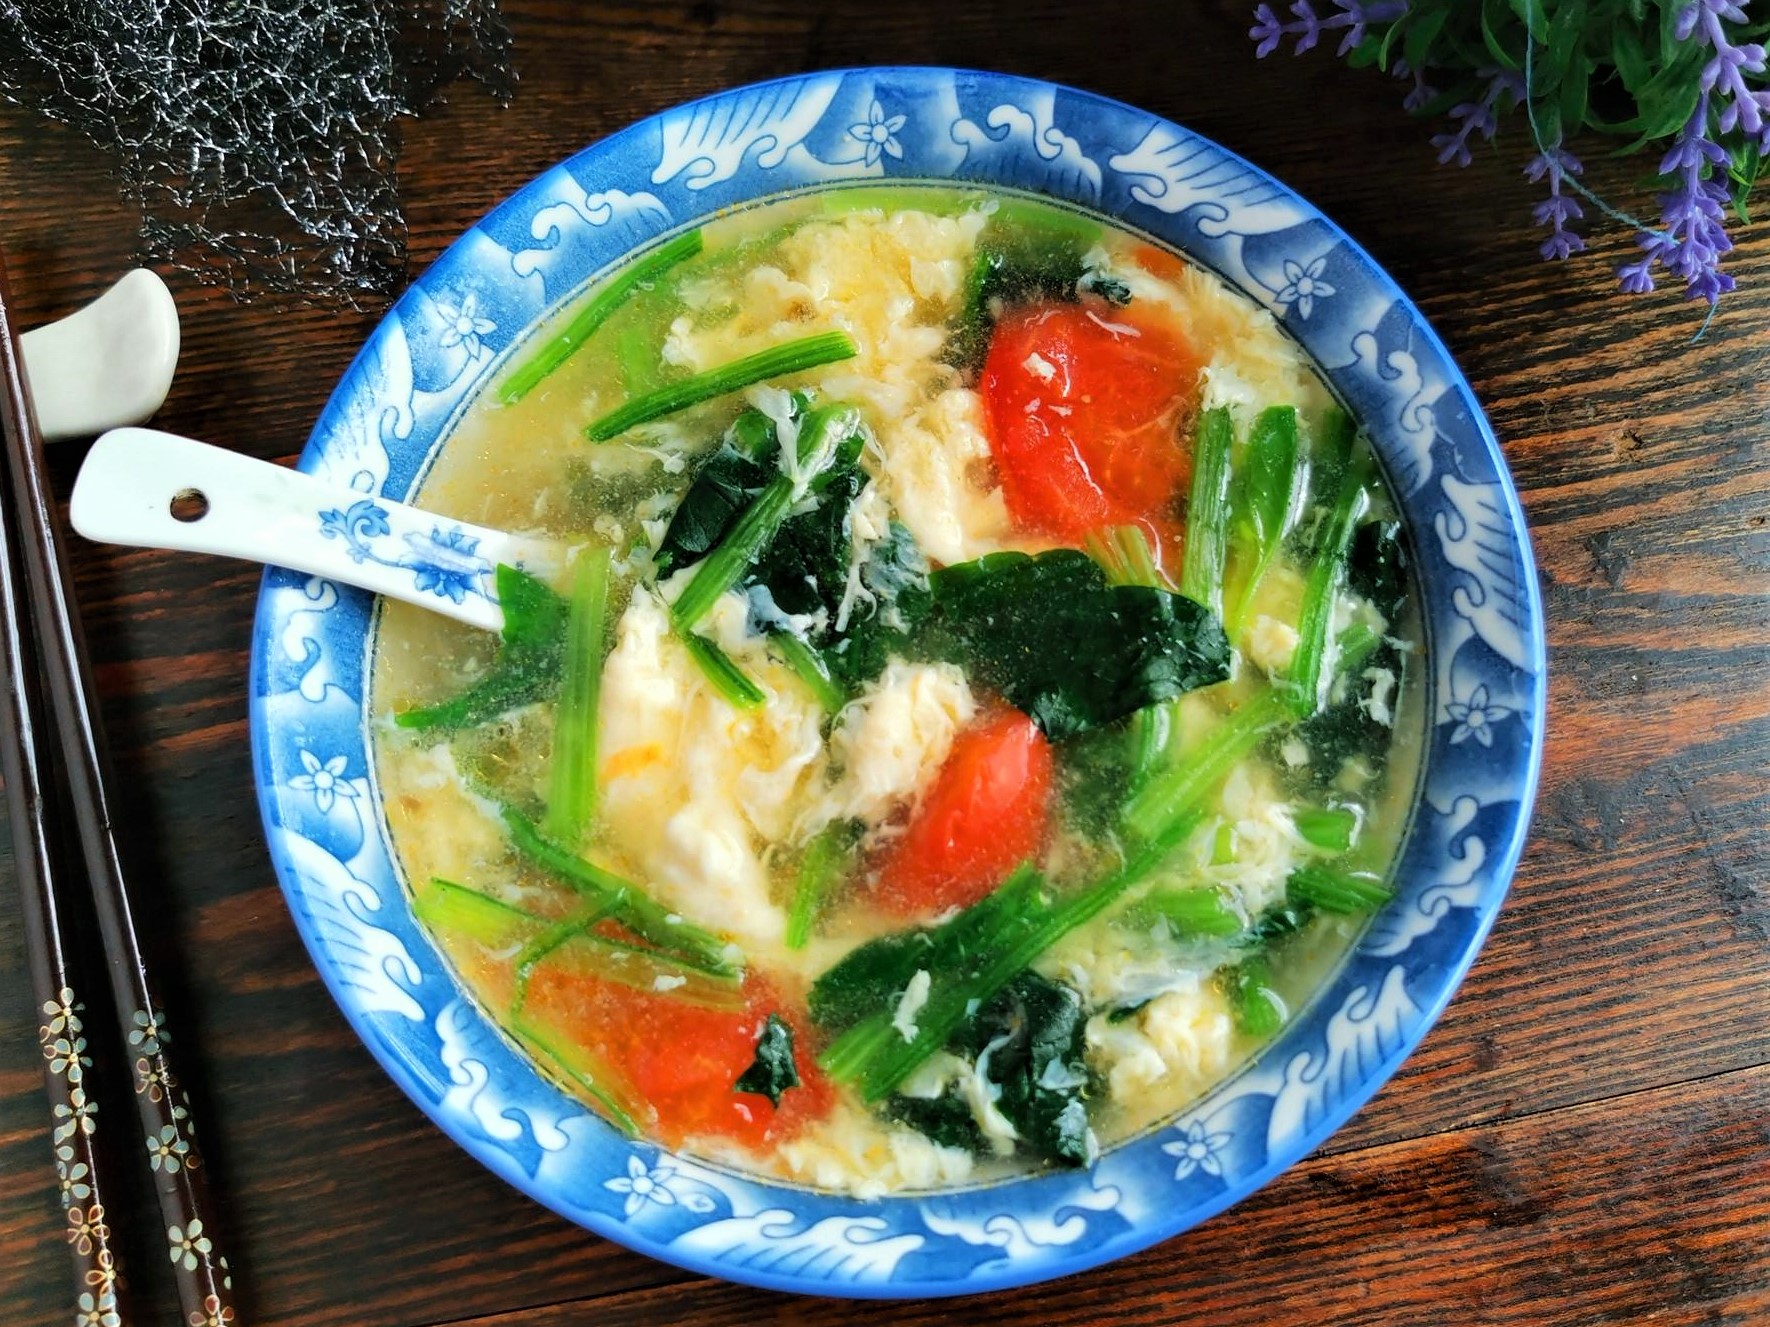 Tomato, spinach egg drop soup recipe 2020